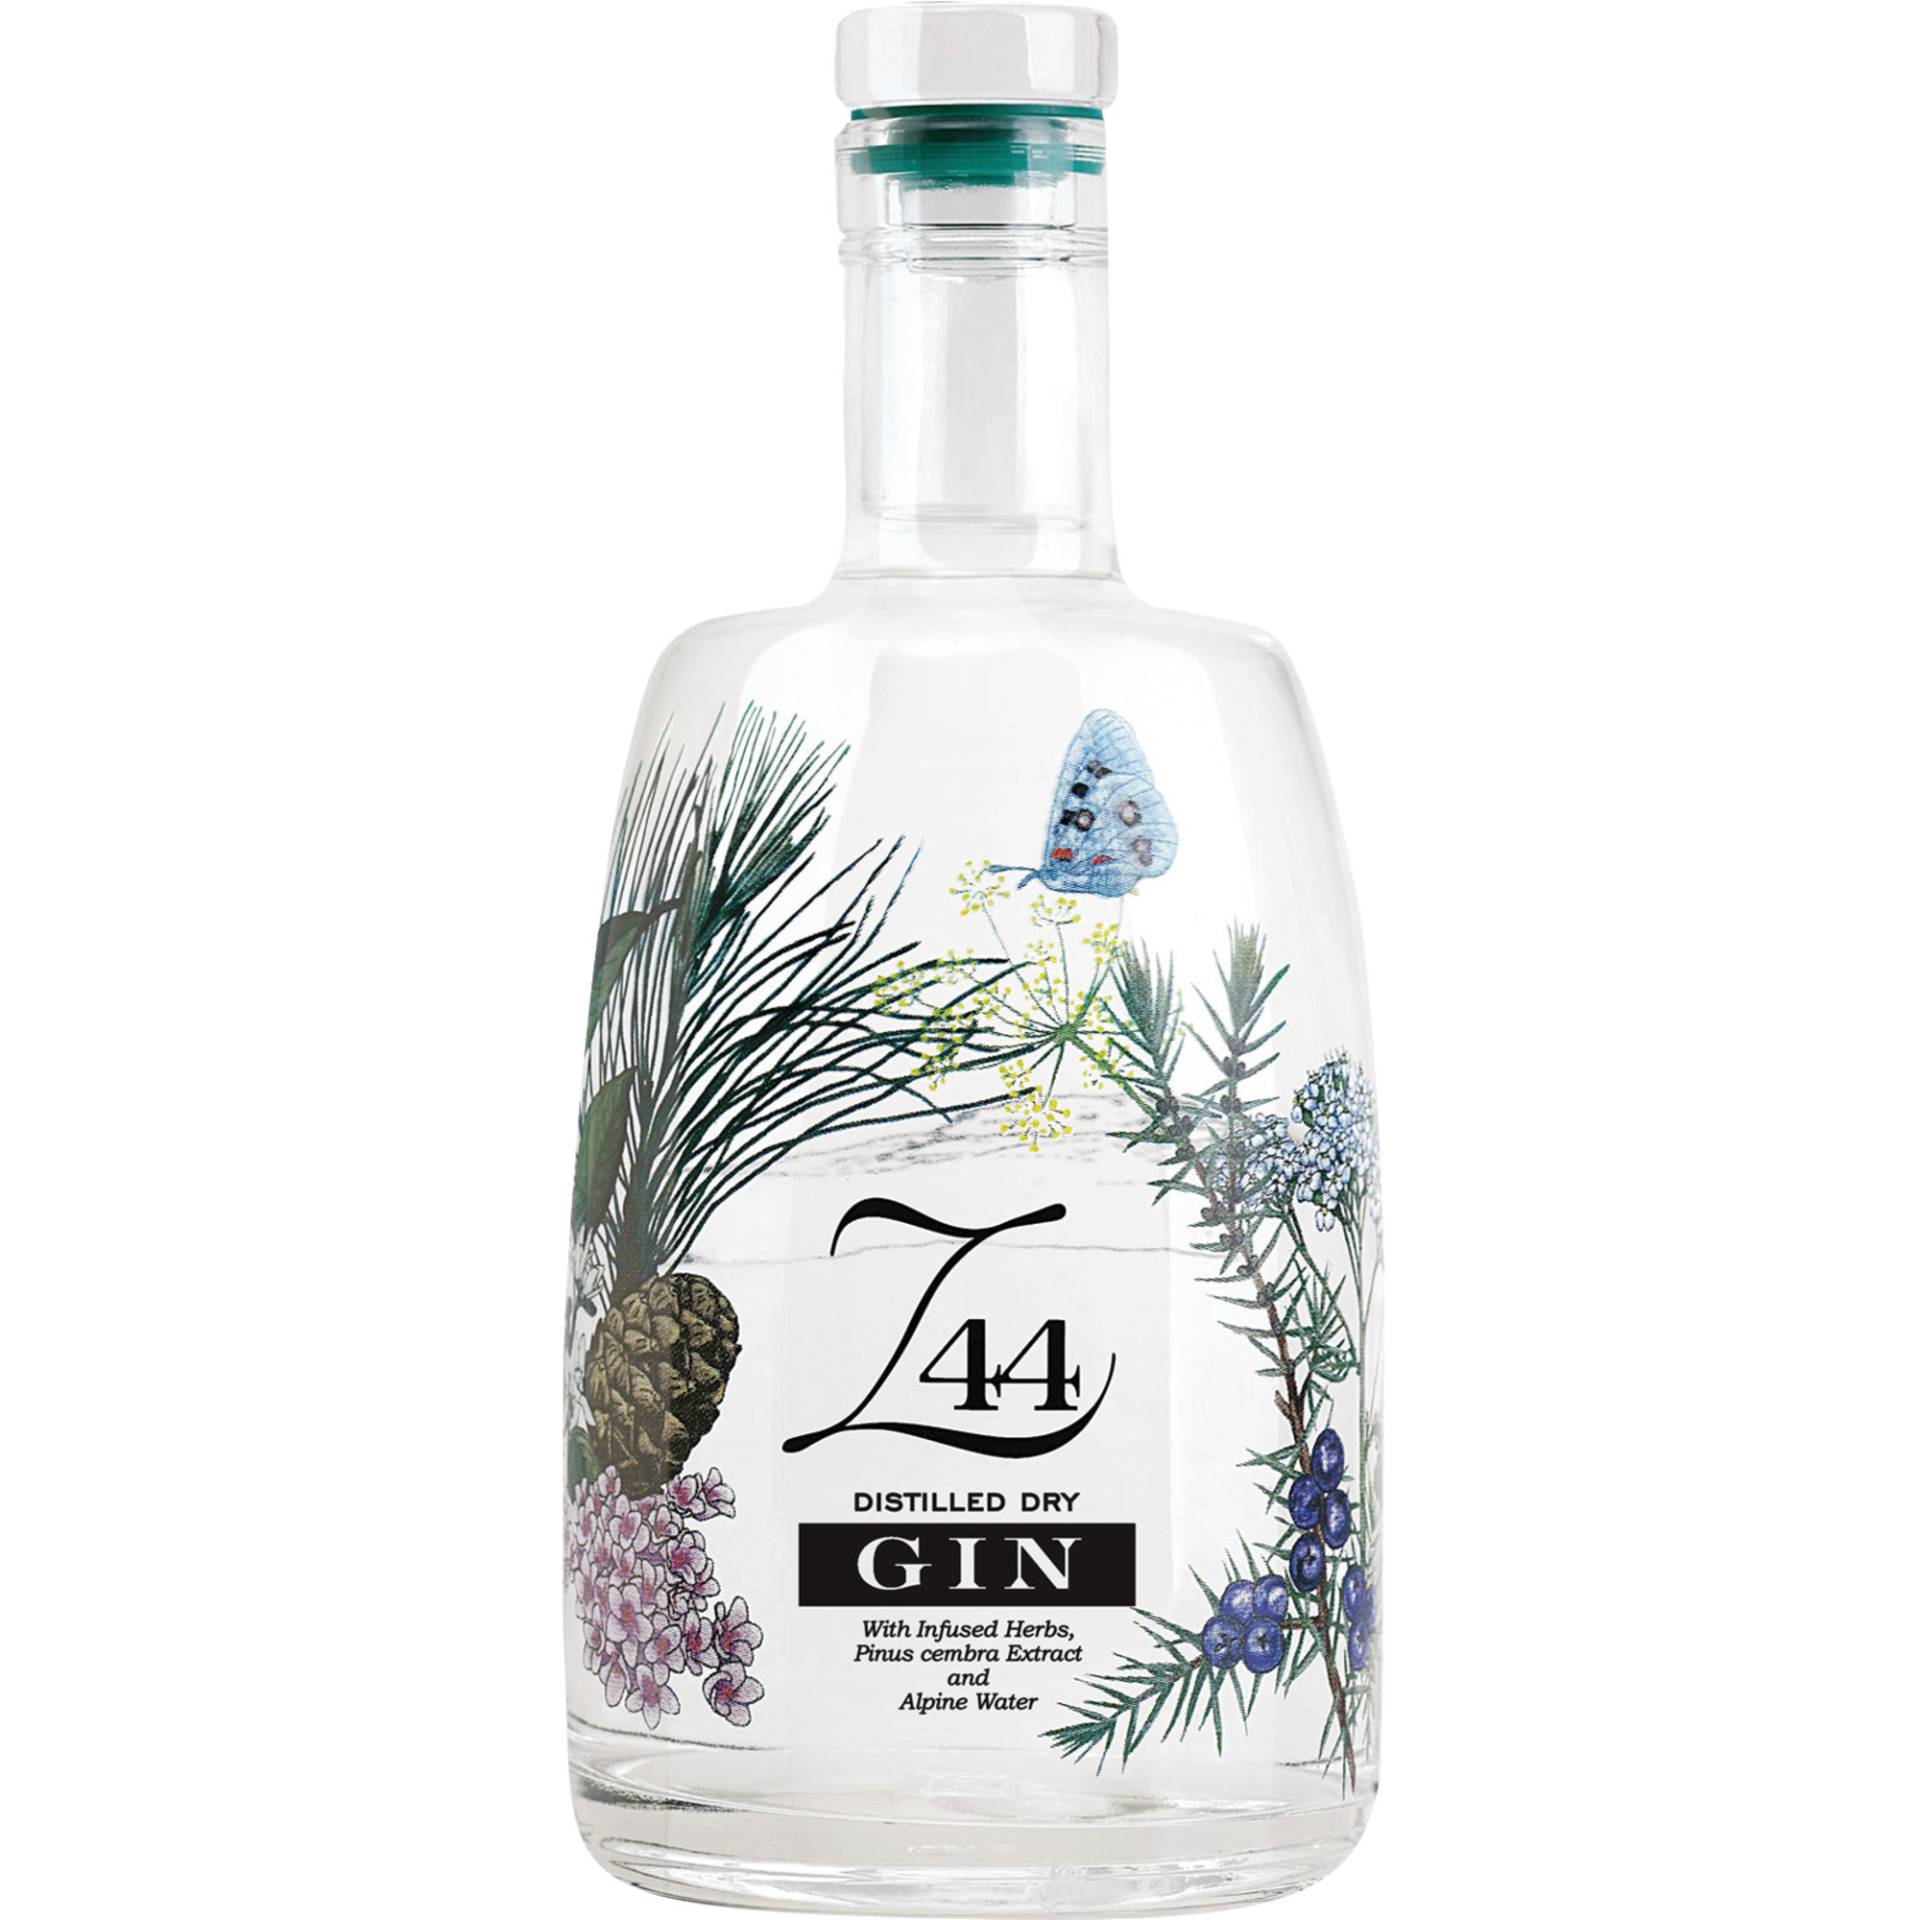 Roner Z44 Dry Gin, 44 % vol. 0,7 L, Spirituosen von Roner AG Brennereien, Josef-von-Zallinger-Strasse 44, I - 39040 Tramin (BZ)